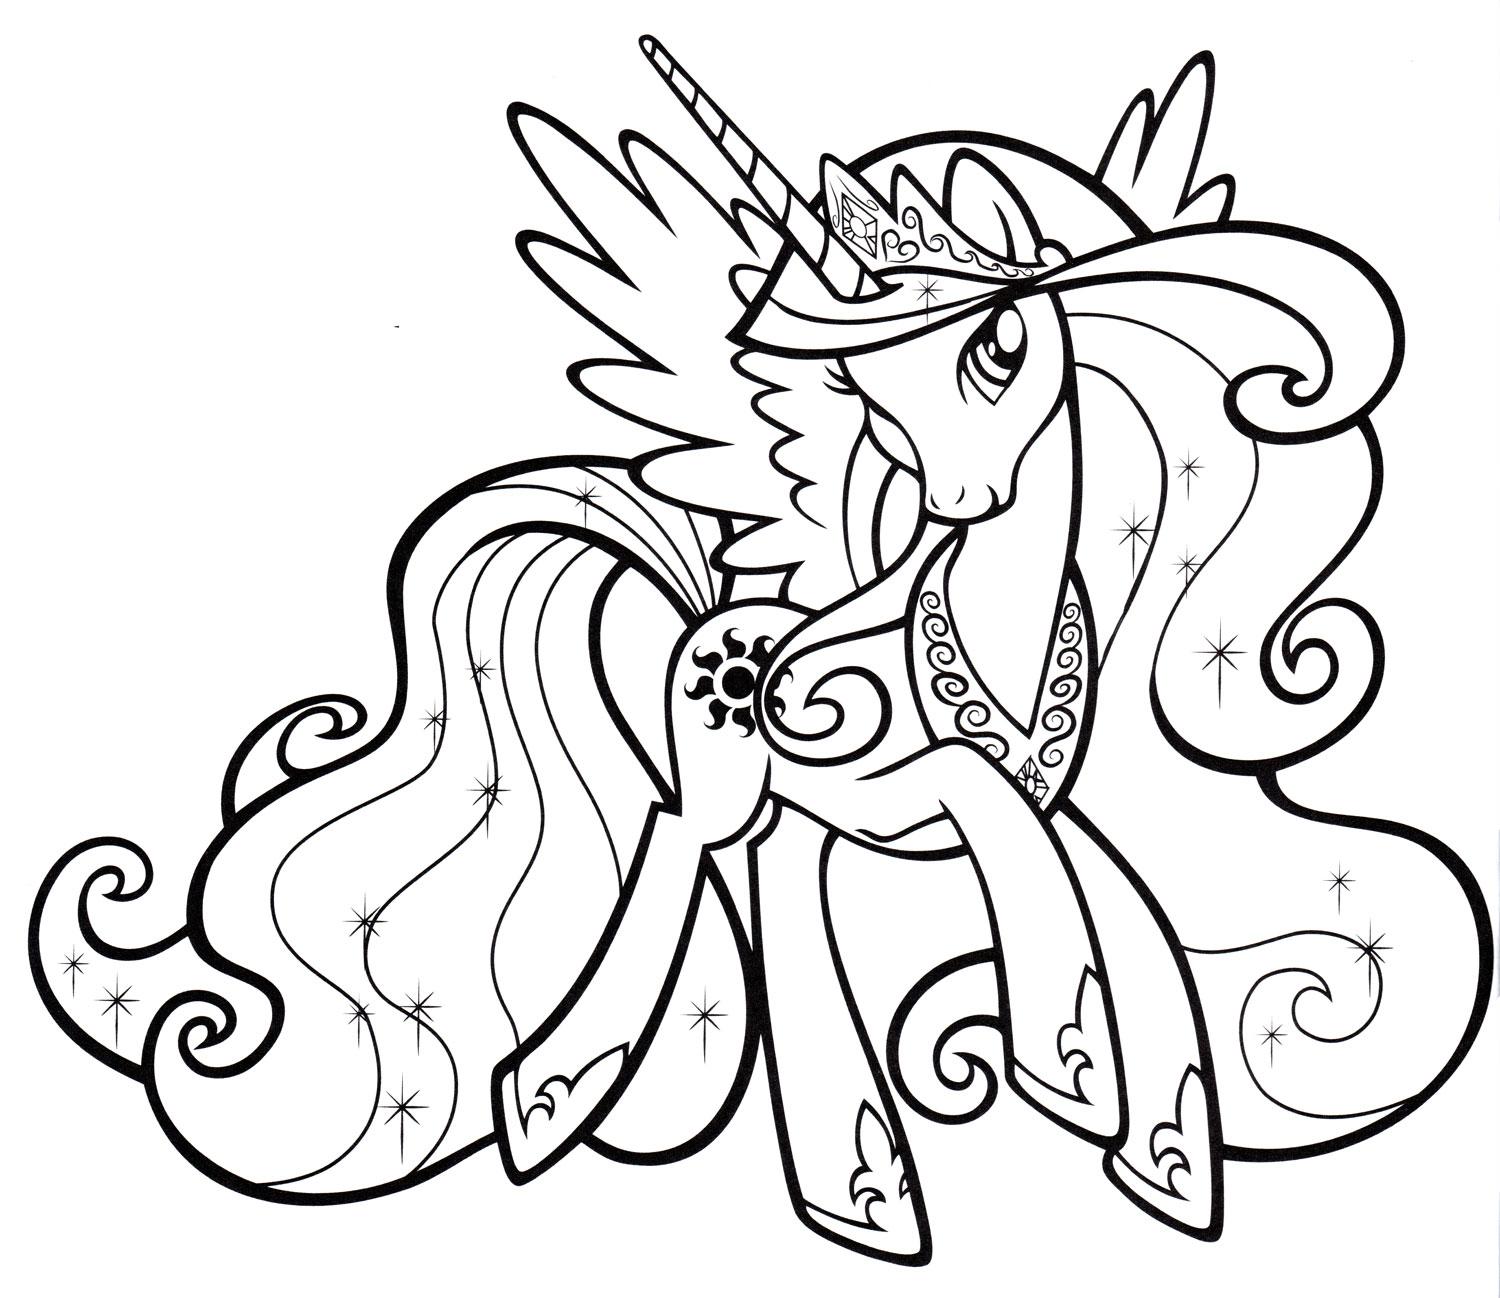 Как нарисовать Пони 🦄 Раскраска пони в разных стилях рисования🌈🌞🦄❤️ Часть-3